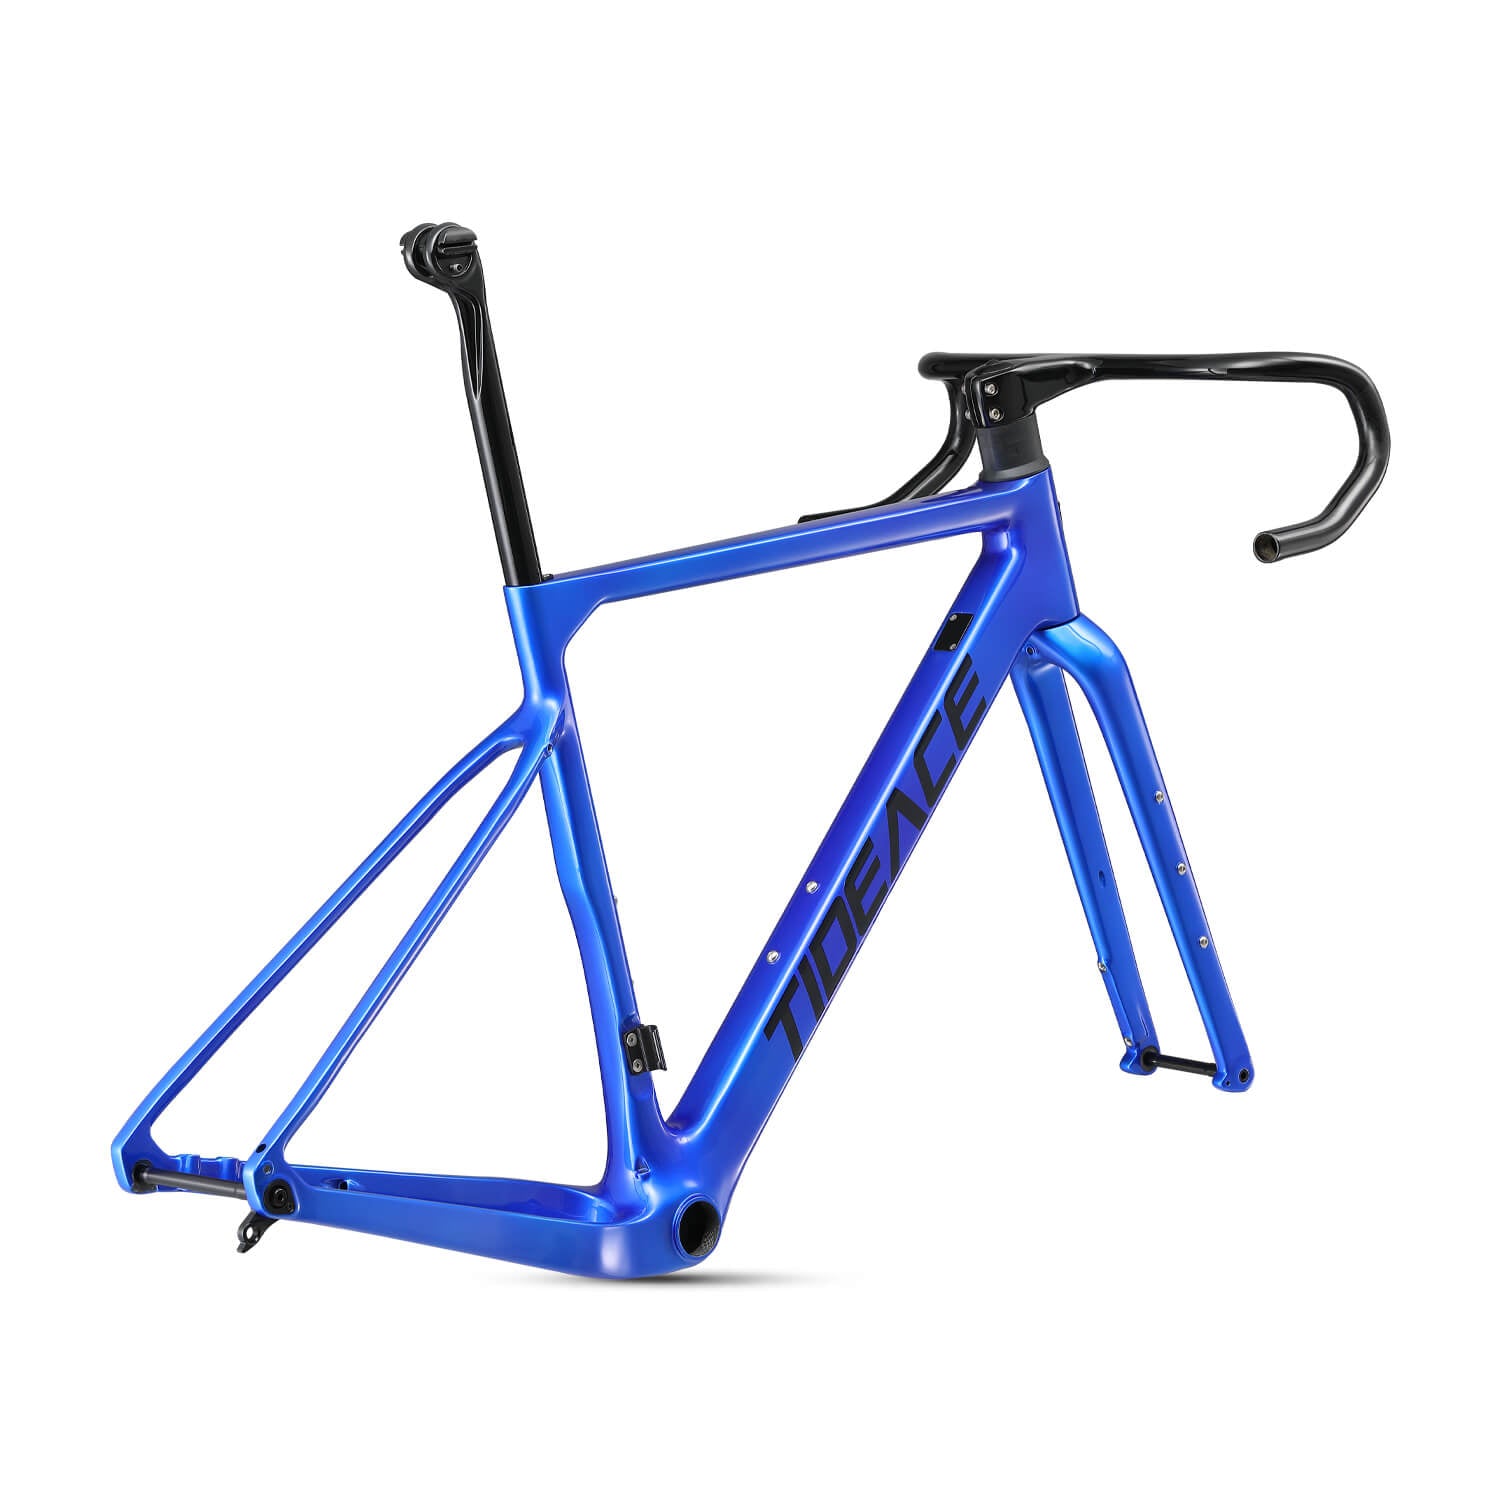 T1000 Carbon Fiber Gravel Road Bike Frame Super Light in Blue Color